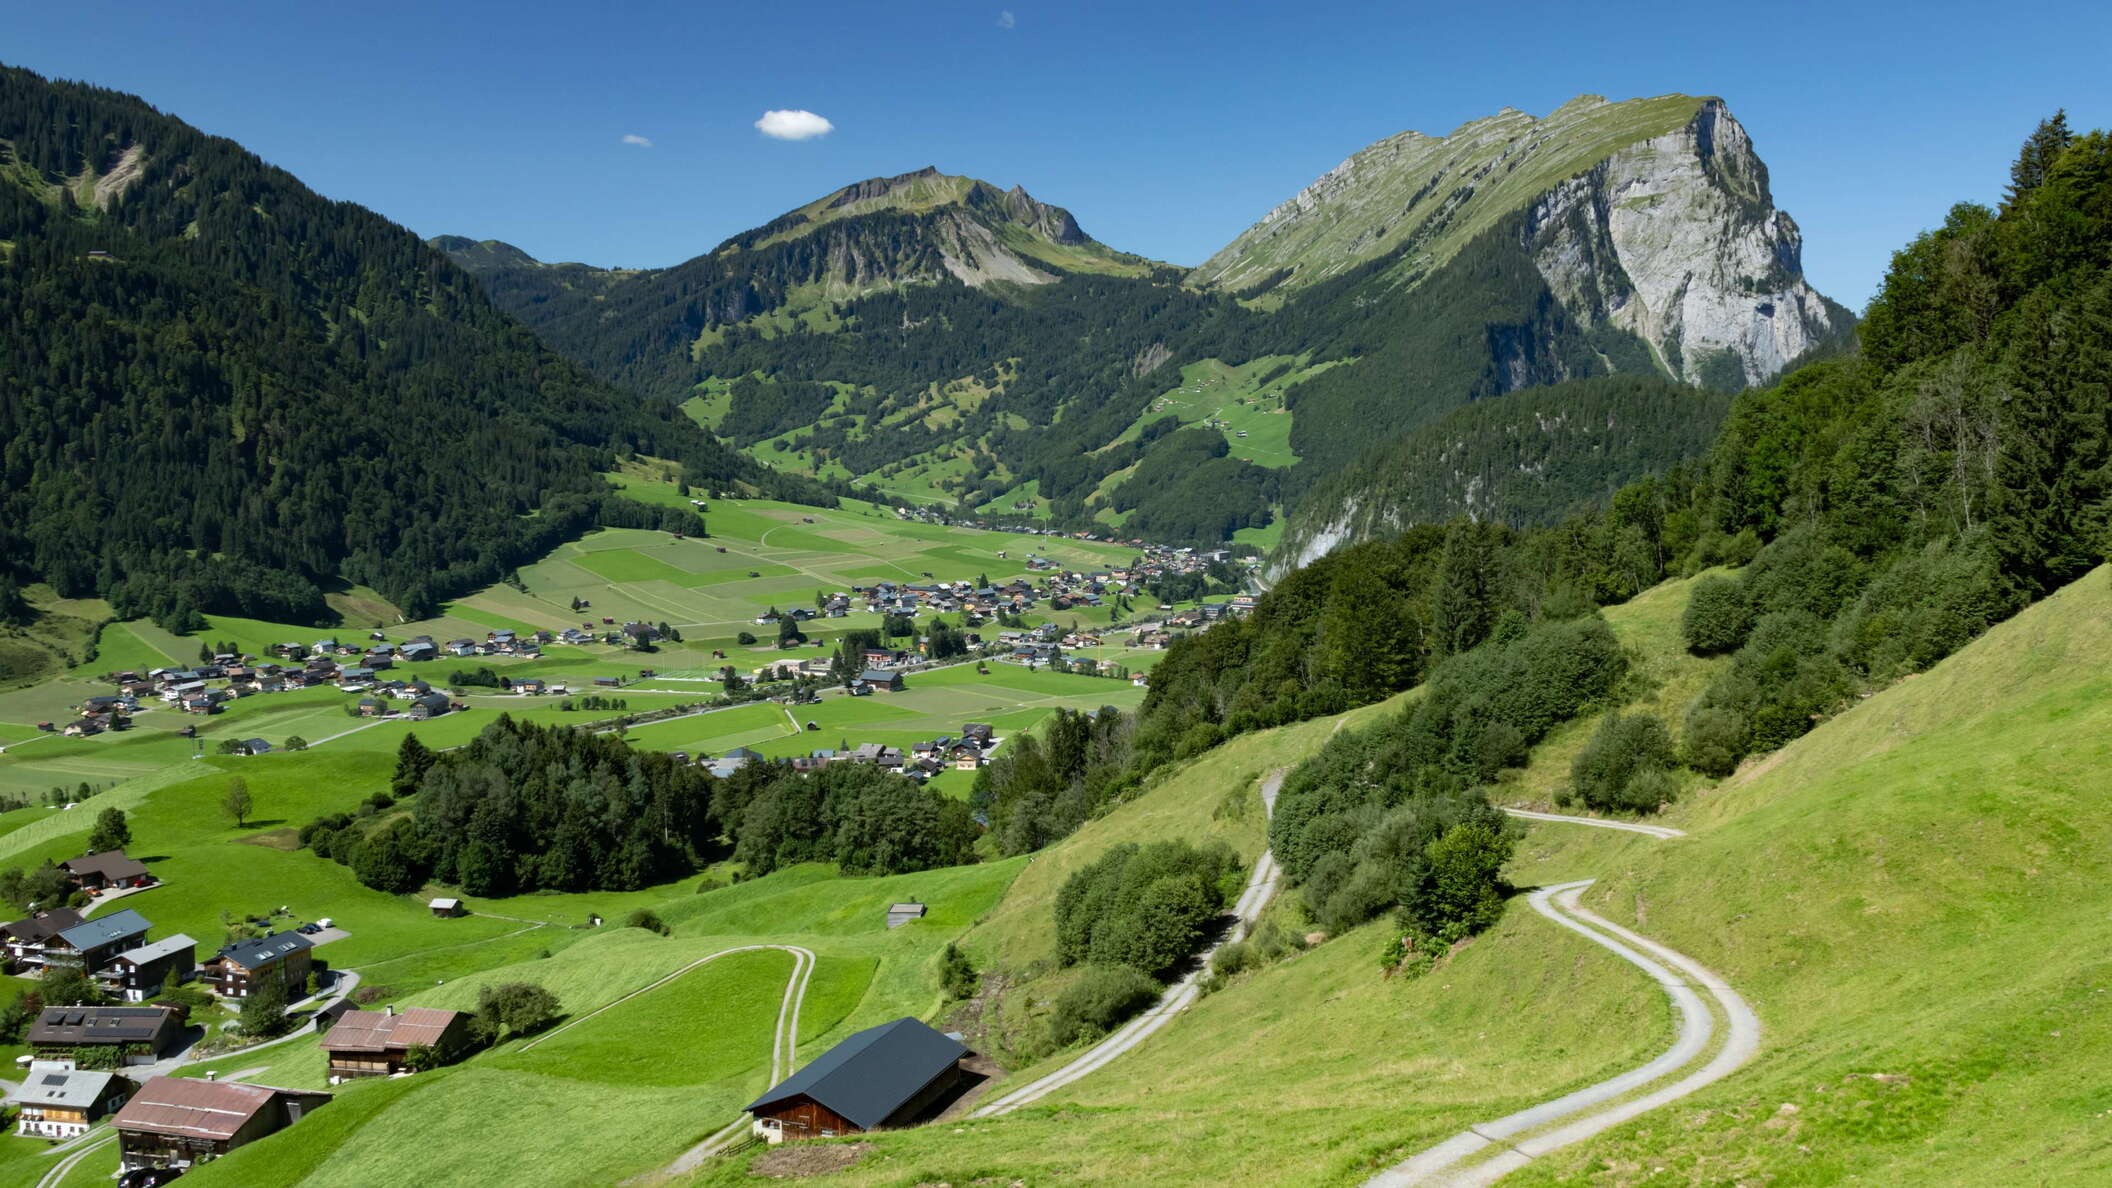 Bregenzer Ach valley with Kanisfluh